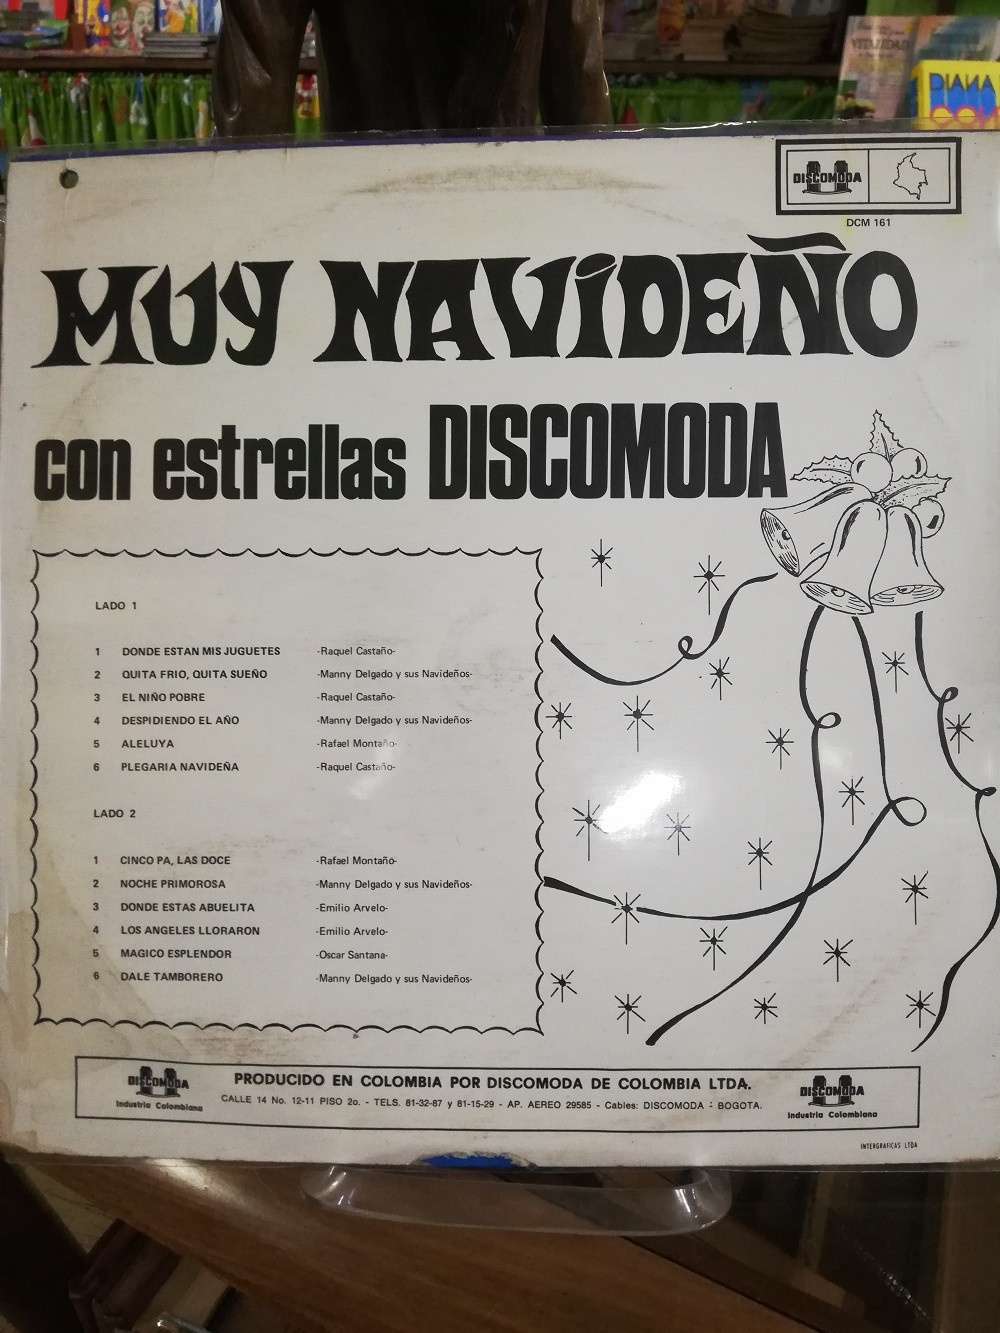 Imagen LP MUY NAVIDEÑO CON ESTRELLAS DISCOMODA - MUY NAVIDEÑO CON ESTRELLAS DISCOMODA 2